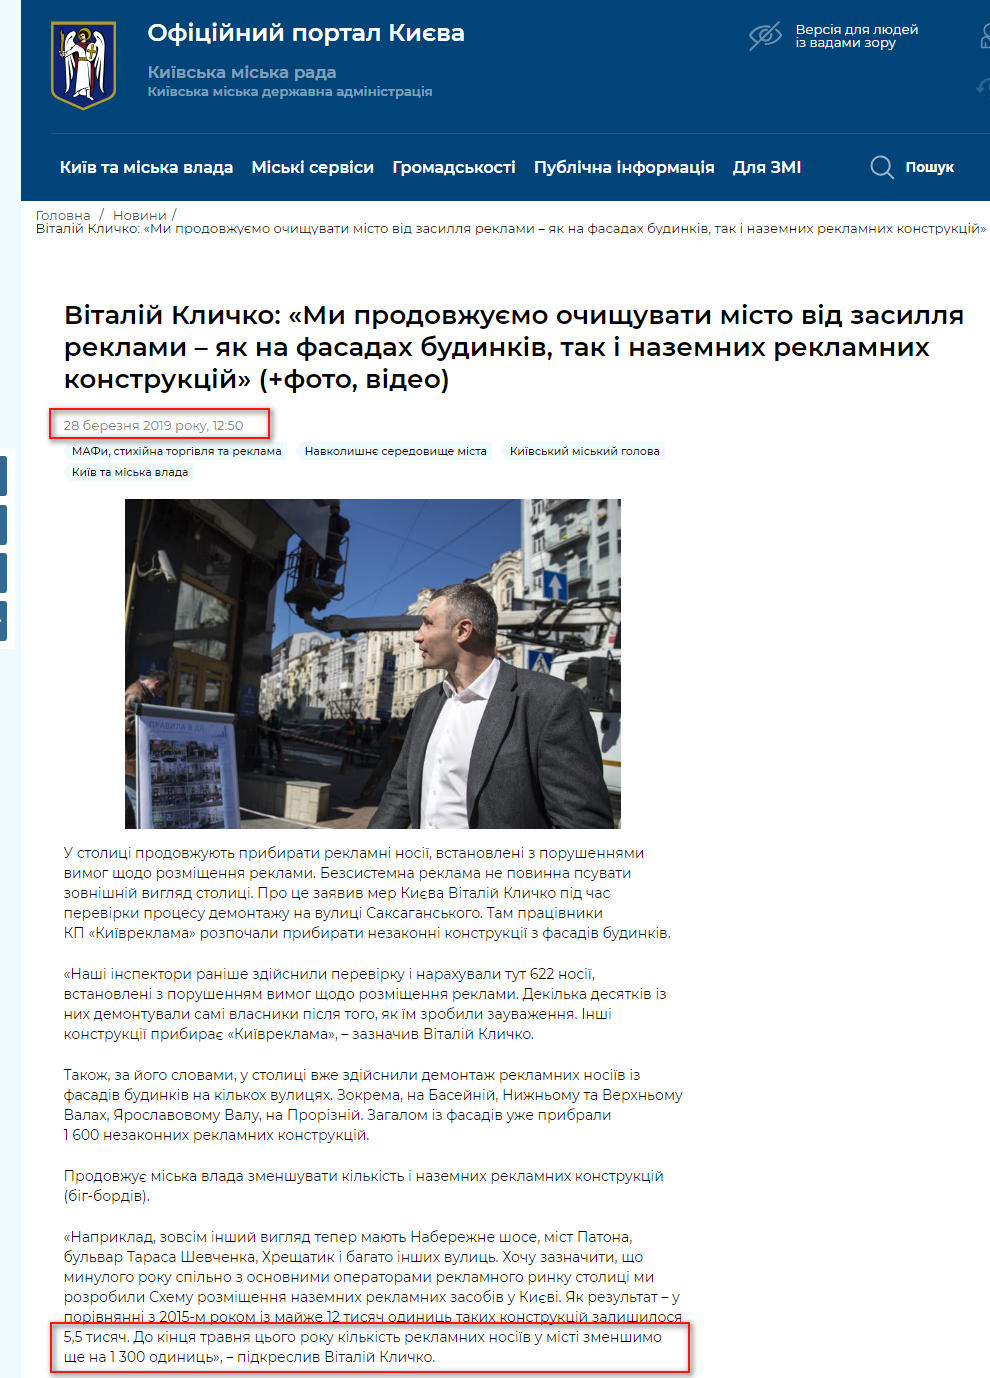 https://kyivcity.gov.ua/news/vitaliy_klichko_mi_prodovzhuyemo_ochischuvati_misto_vid_zasillya_reklami__yak_na_fasadakh_budinkiv_tak_i_nazemnikh_reklamnikh_konstruktsiy.html